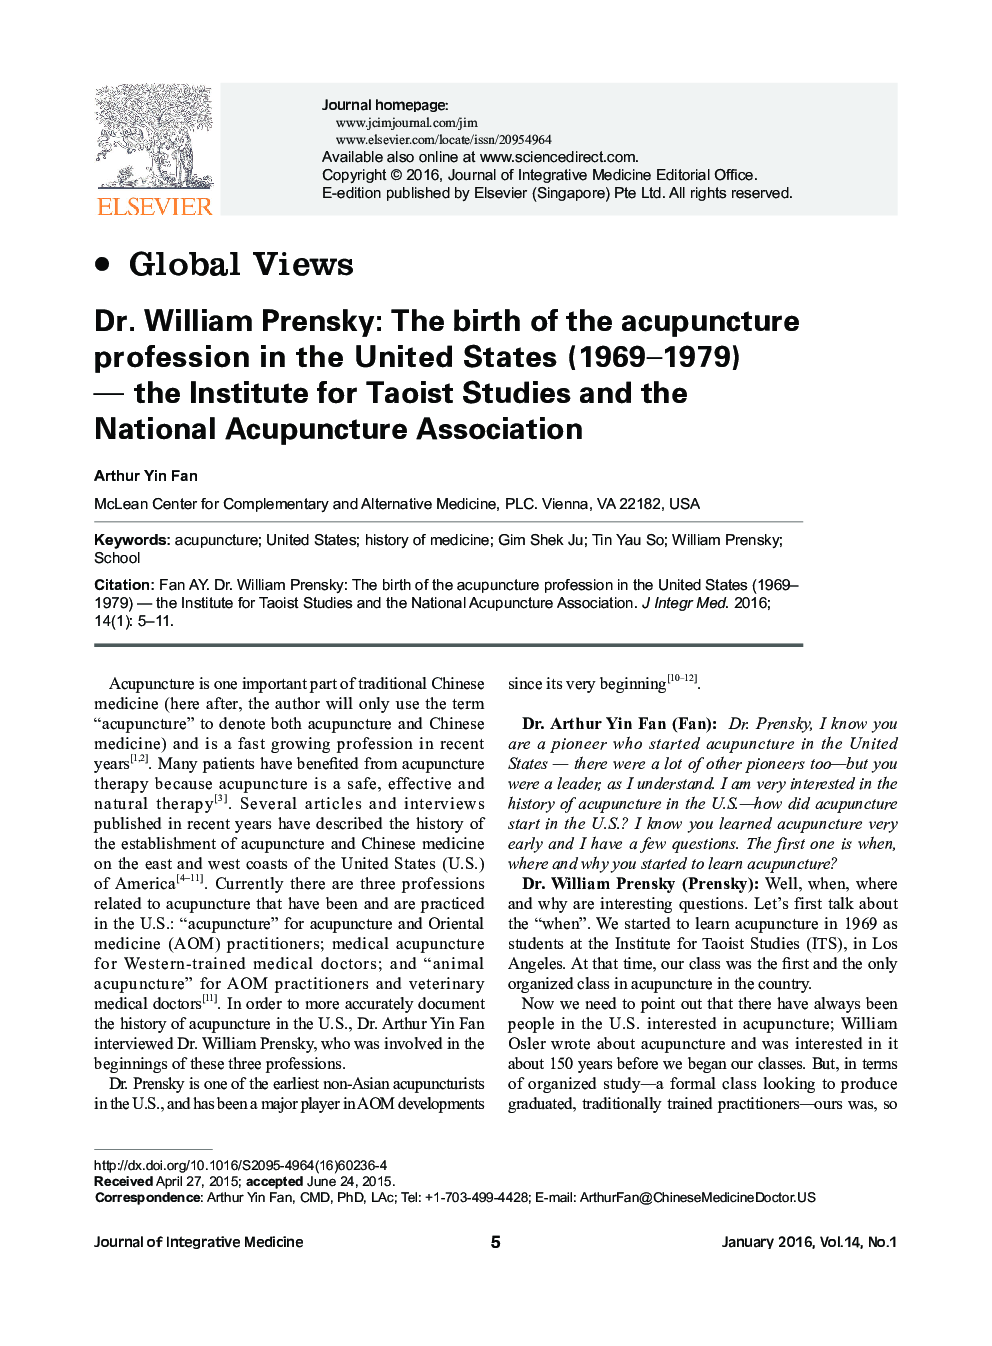 دکتر ویلیام پرنسکی: تولد طب سوزنی در ایالات متحده (1969-1979) - موسسه مطالعات تائو و انجمن ملی طب سوزنی 